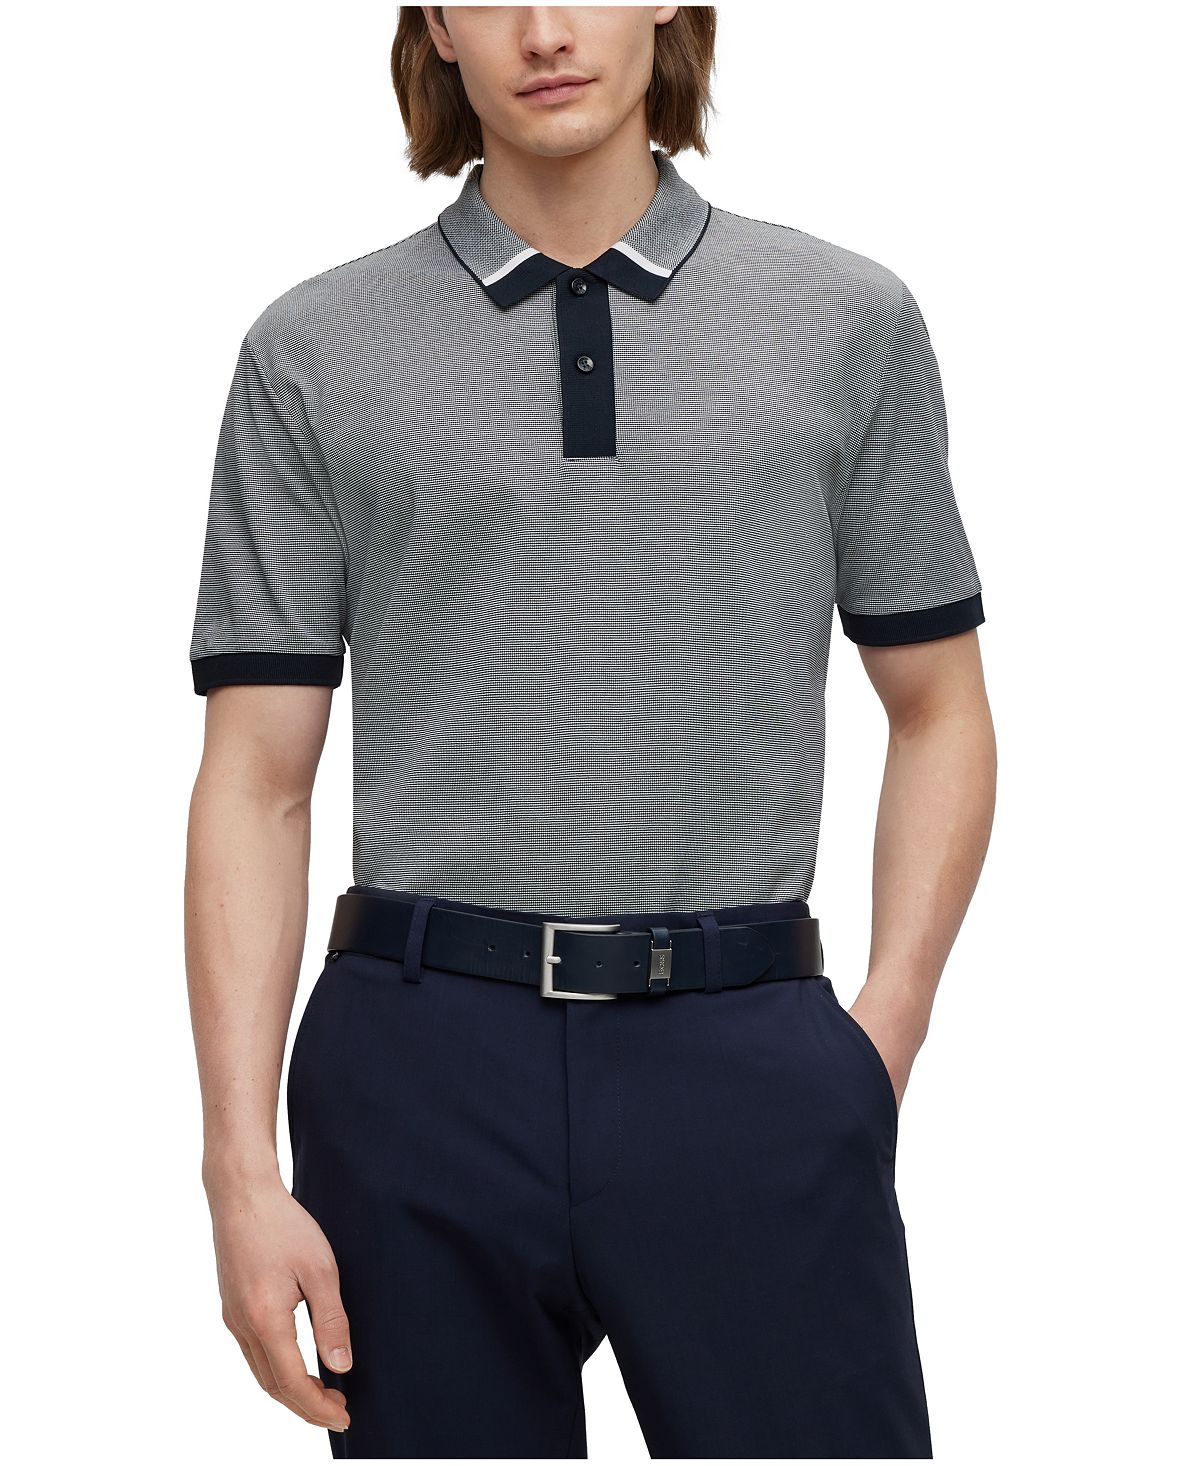 Мужская двухцветная рубашка-поло стандартного кроя Hugo Boss рубашка стандартного кроя из чистого хлопка luca d altieri светло синий